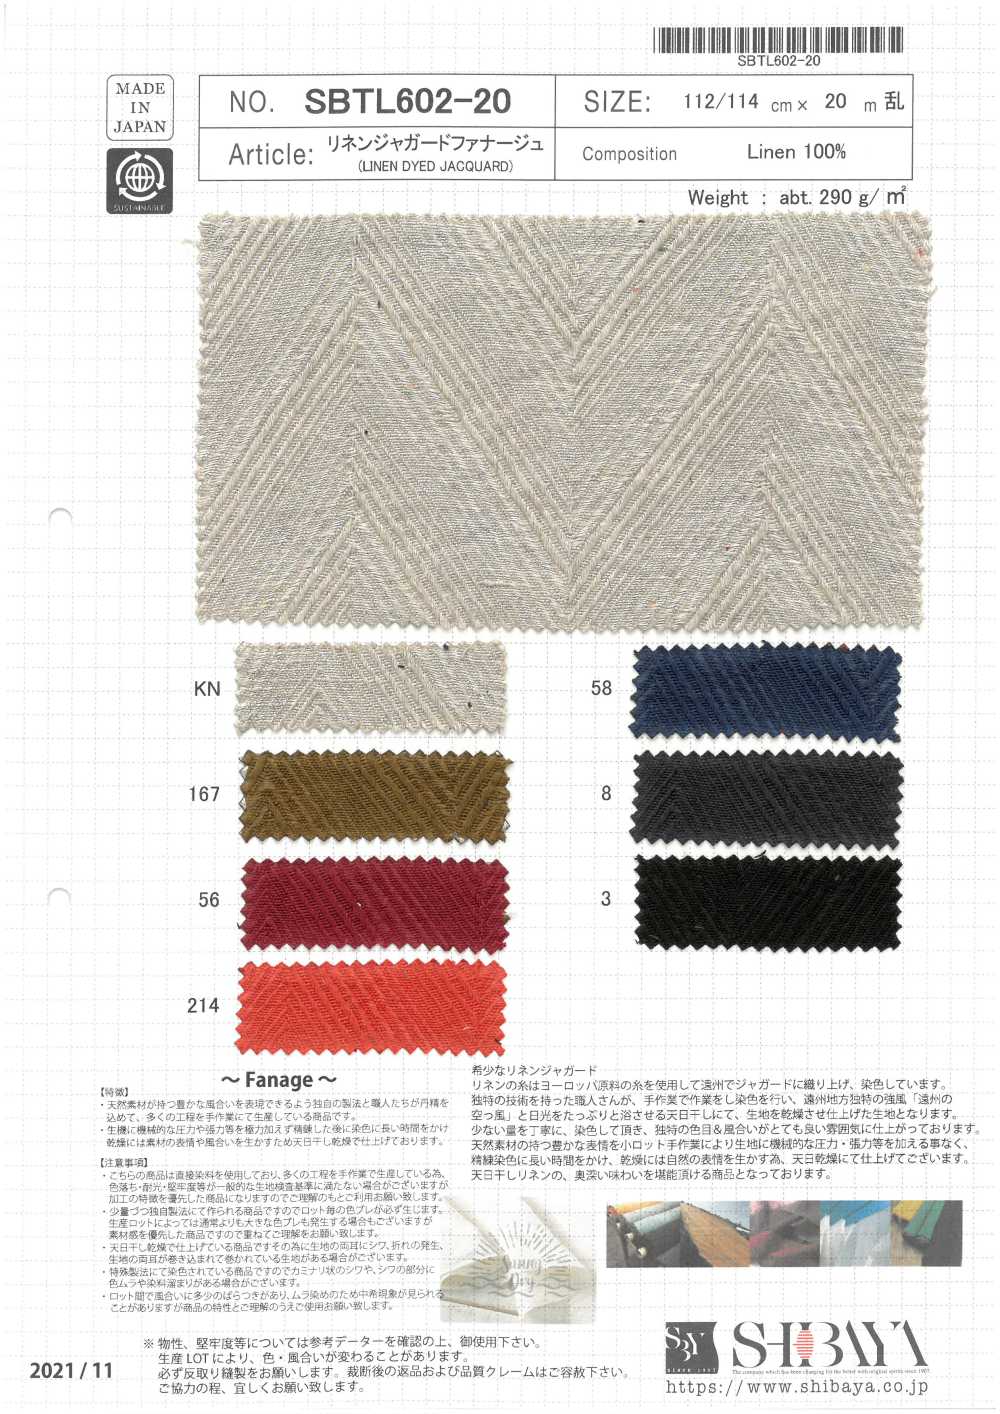 SBTL602-20 Fanage De Linho Jacquard[Têxtil / Tecido] SHIBAYA